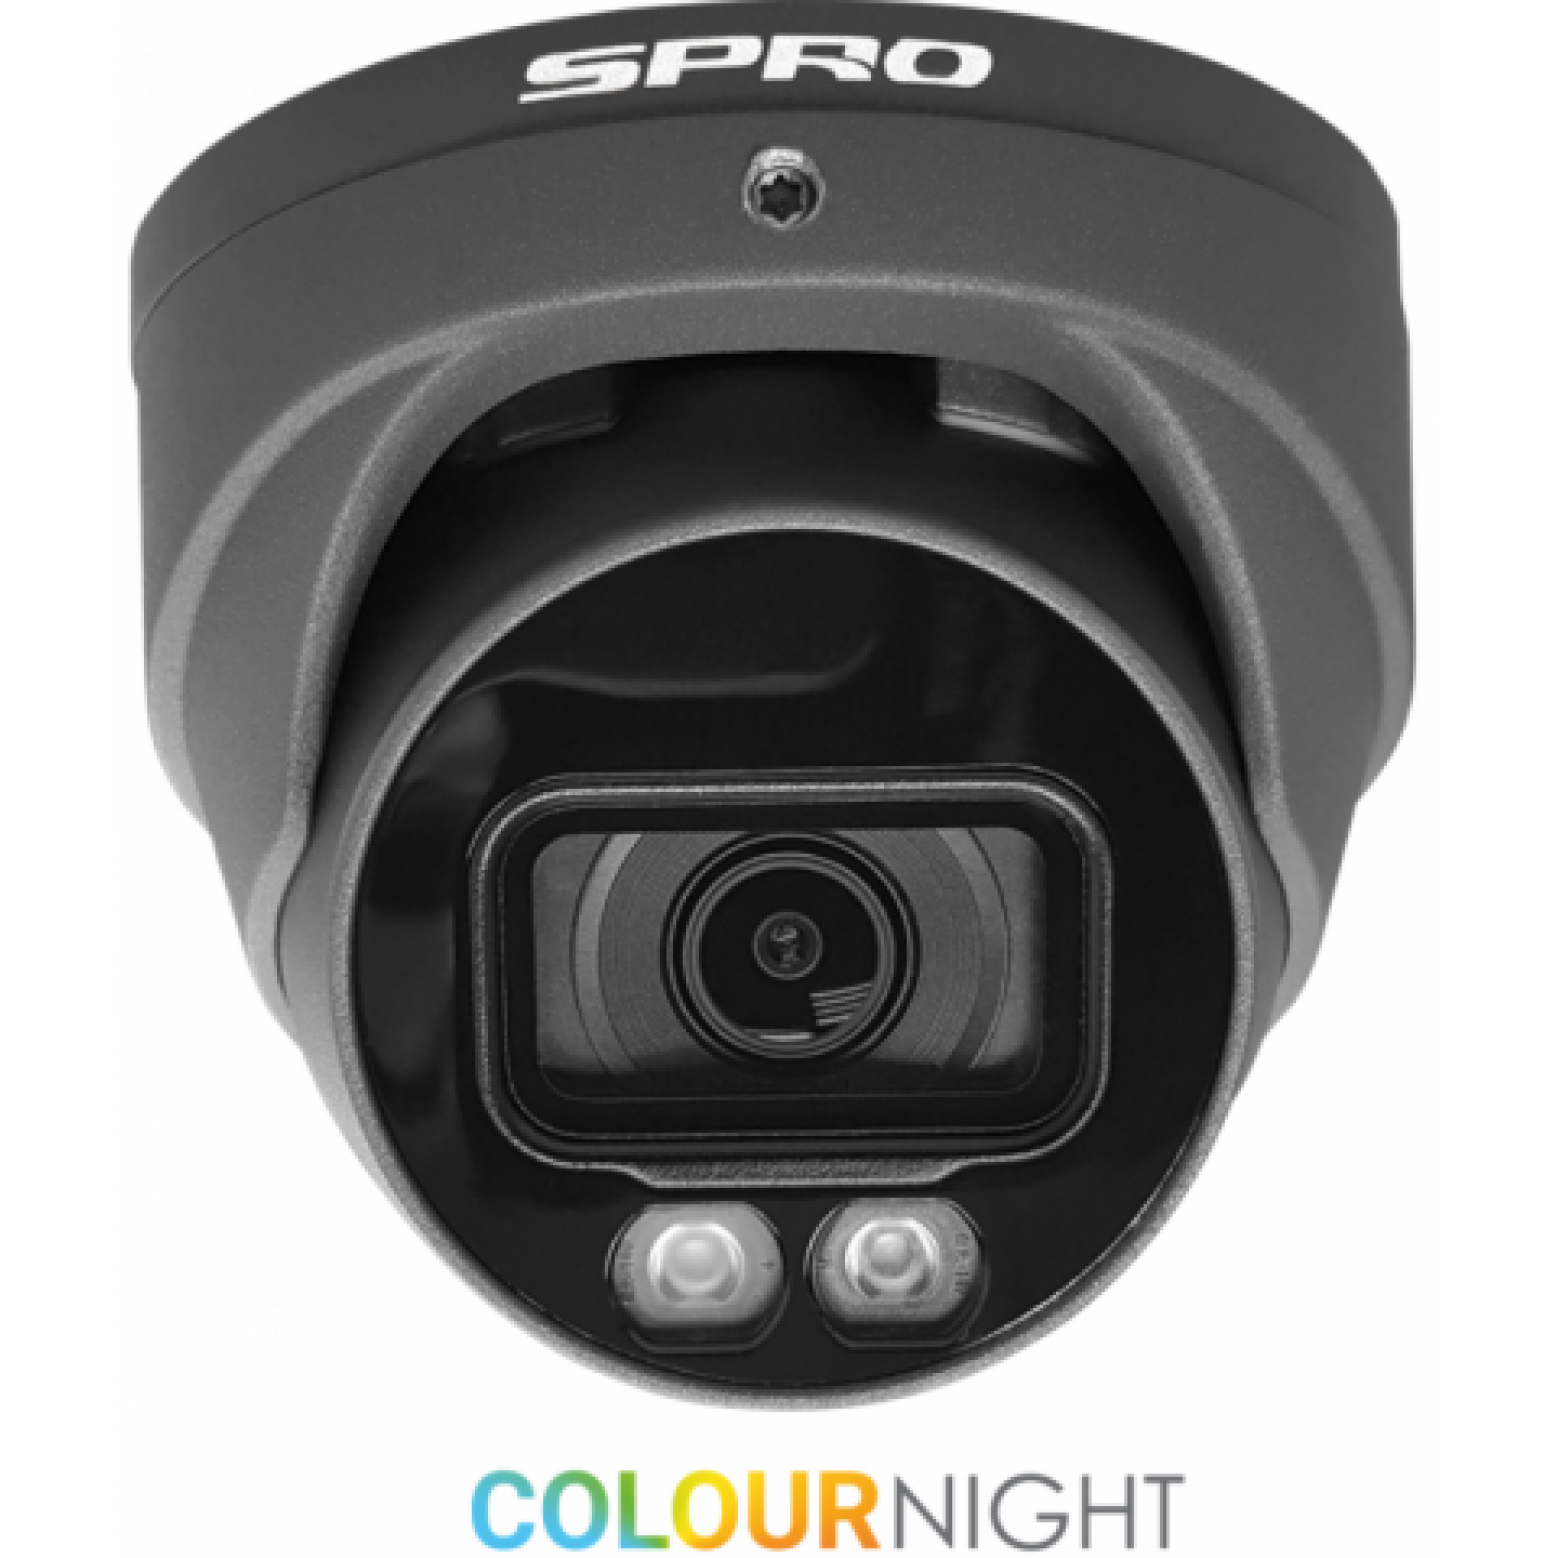 SPRO 4mp Colour Night turret camera